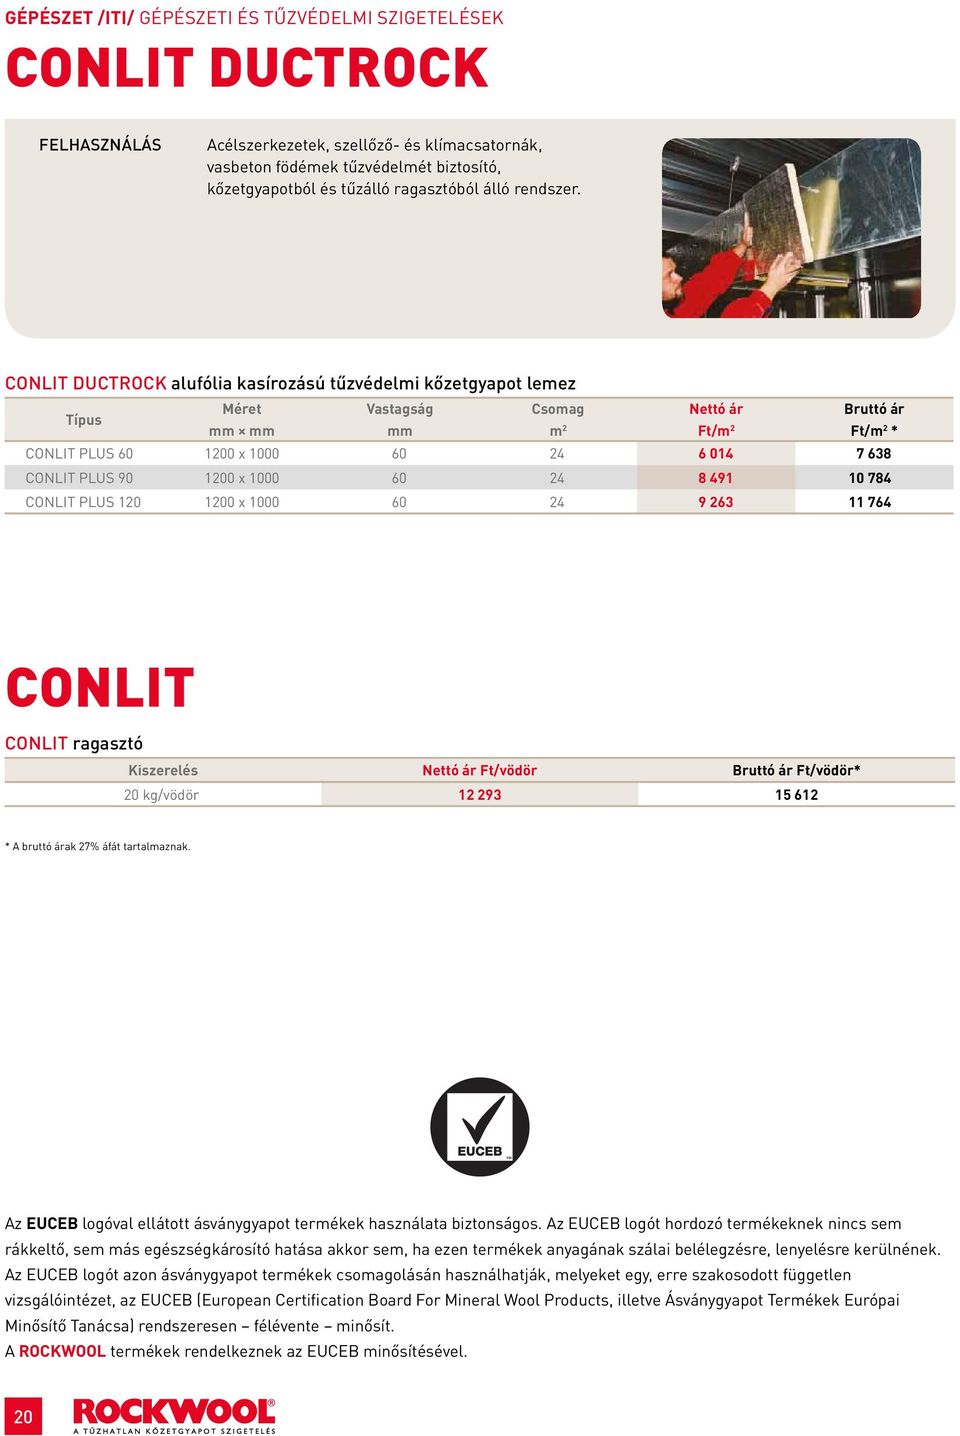 CONLIT DUCTOCK alufólia kasírozású tűzvédelmi kőzetgyapot lemez Típus Ft/ Ft/ * CONLIT PLUS 60 1200 x 1000 60 24 6 014 7 638 CONLIT PLUS 90 1200 x 1000 60 24 8 491 10 784 CONLIT PLUS 120 1200 x 1000